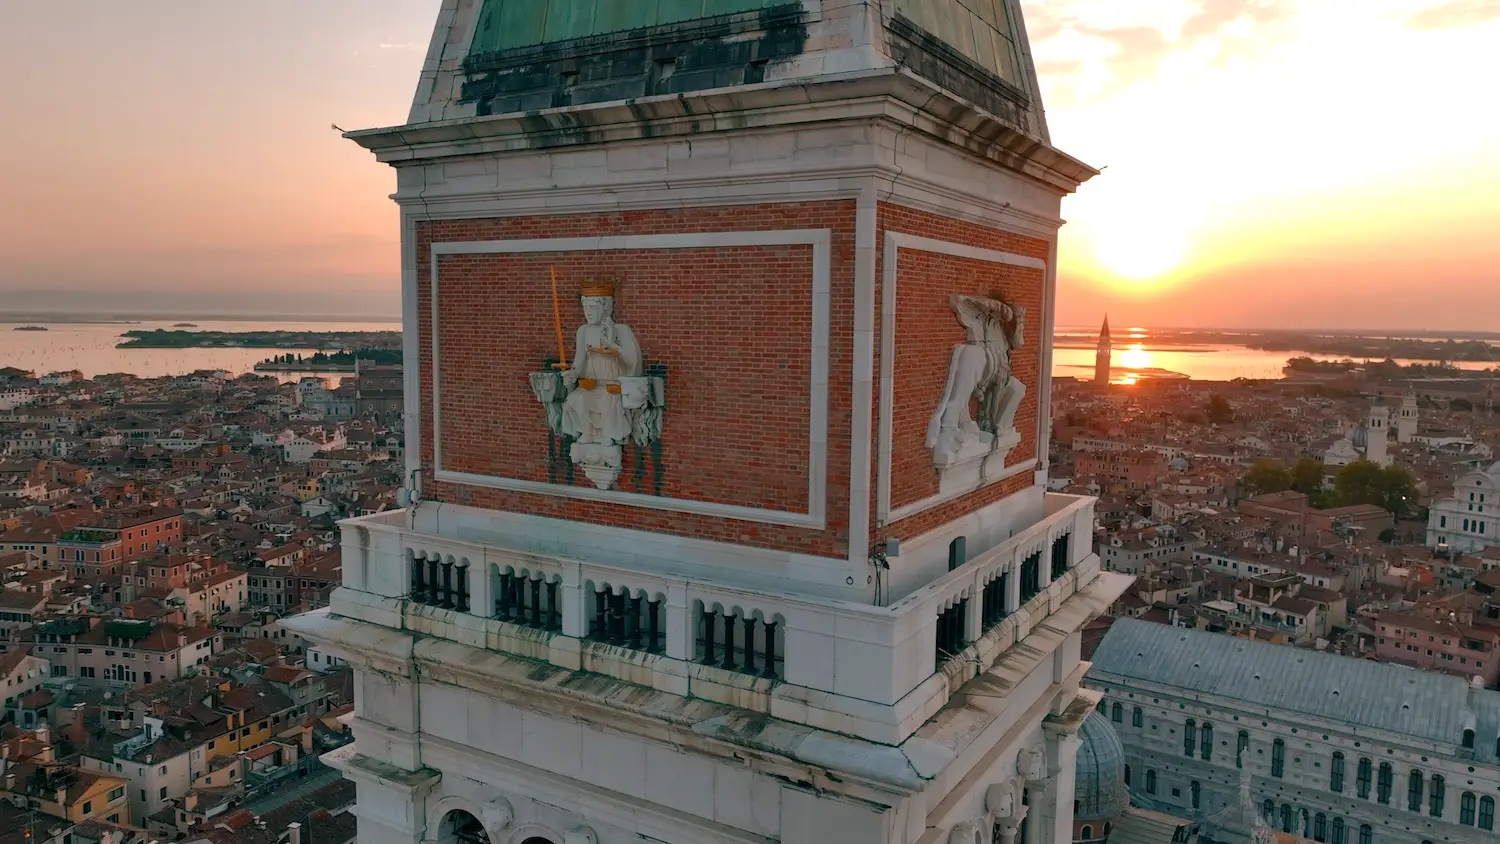 Ripresa aerea con drone del campanile di San Marco a Venezia alle prime ore dell'alba.